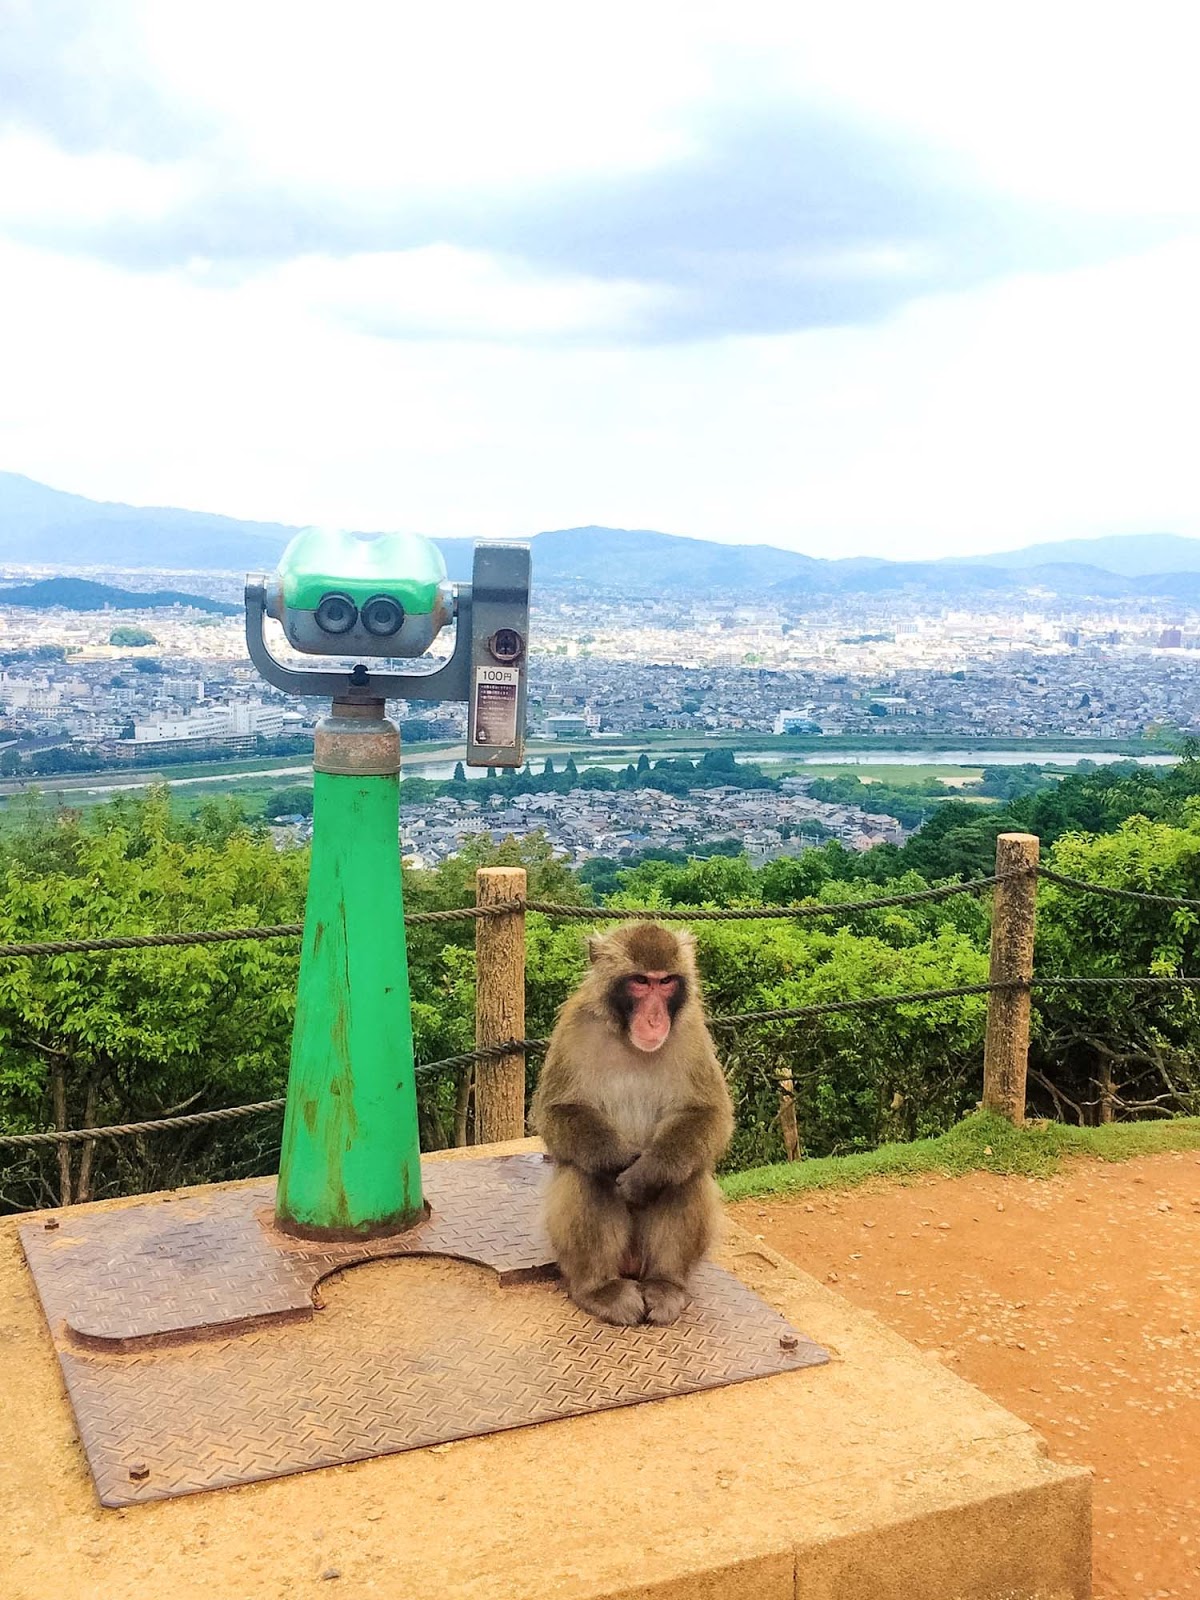 iwatayama monkey park